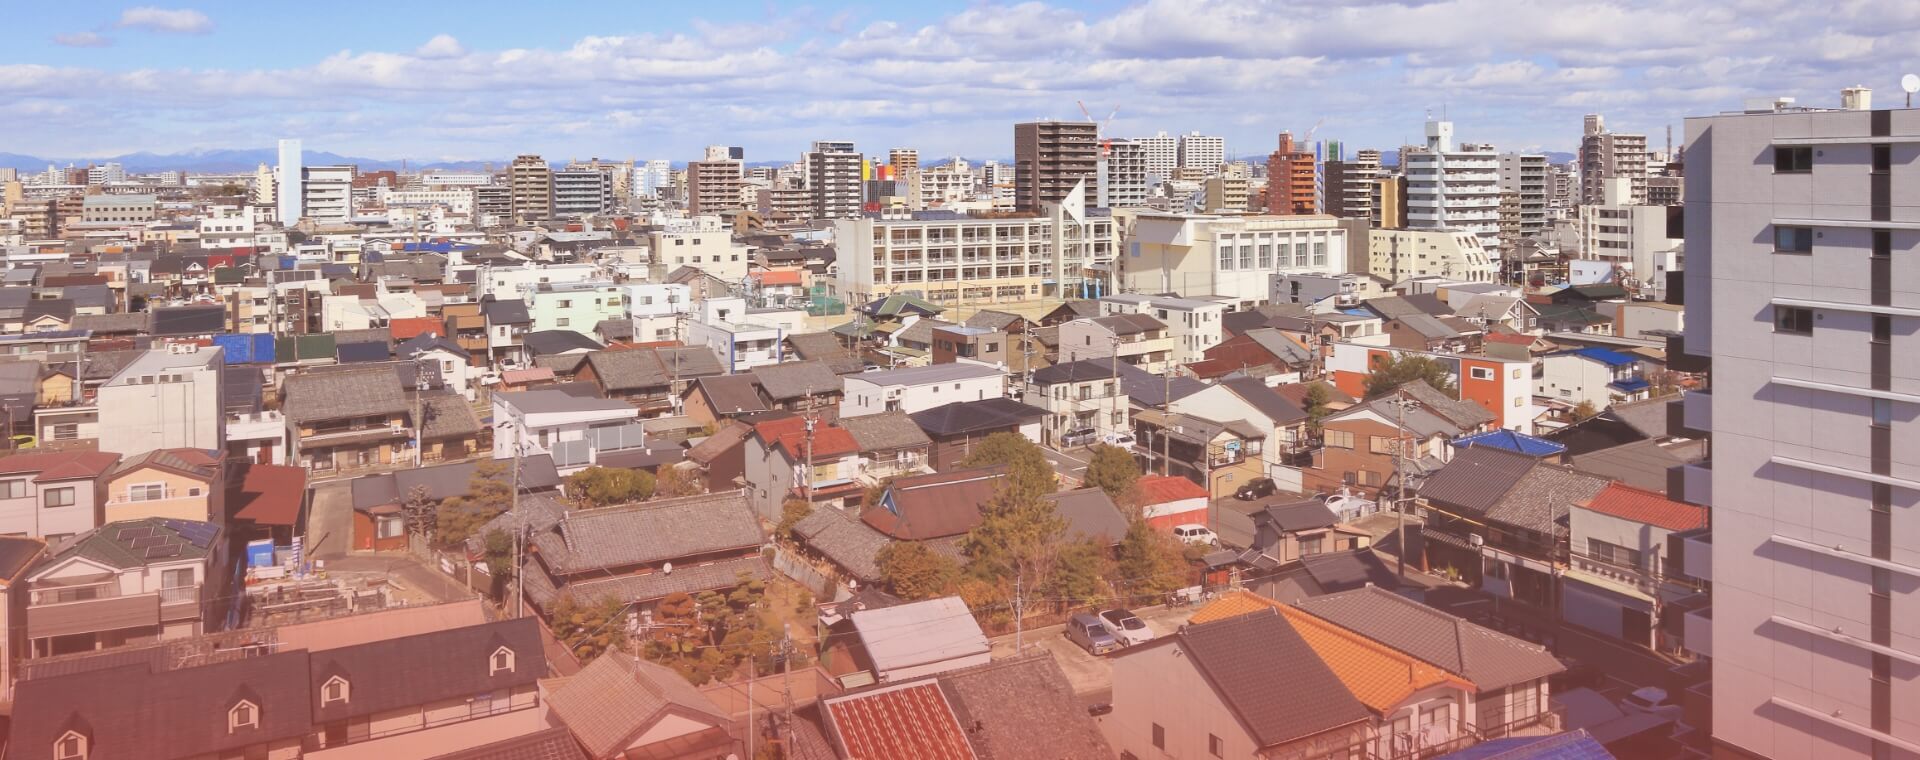 上空から見た日本の街並み